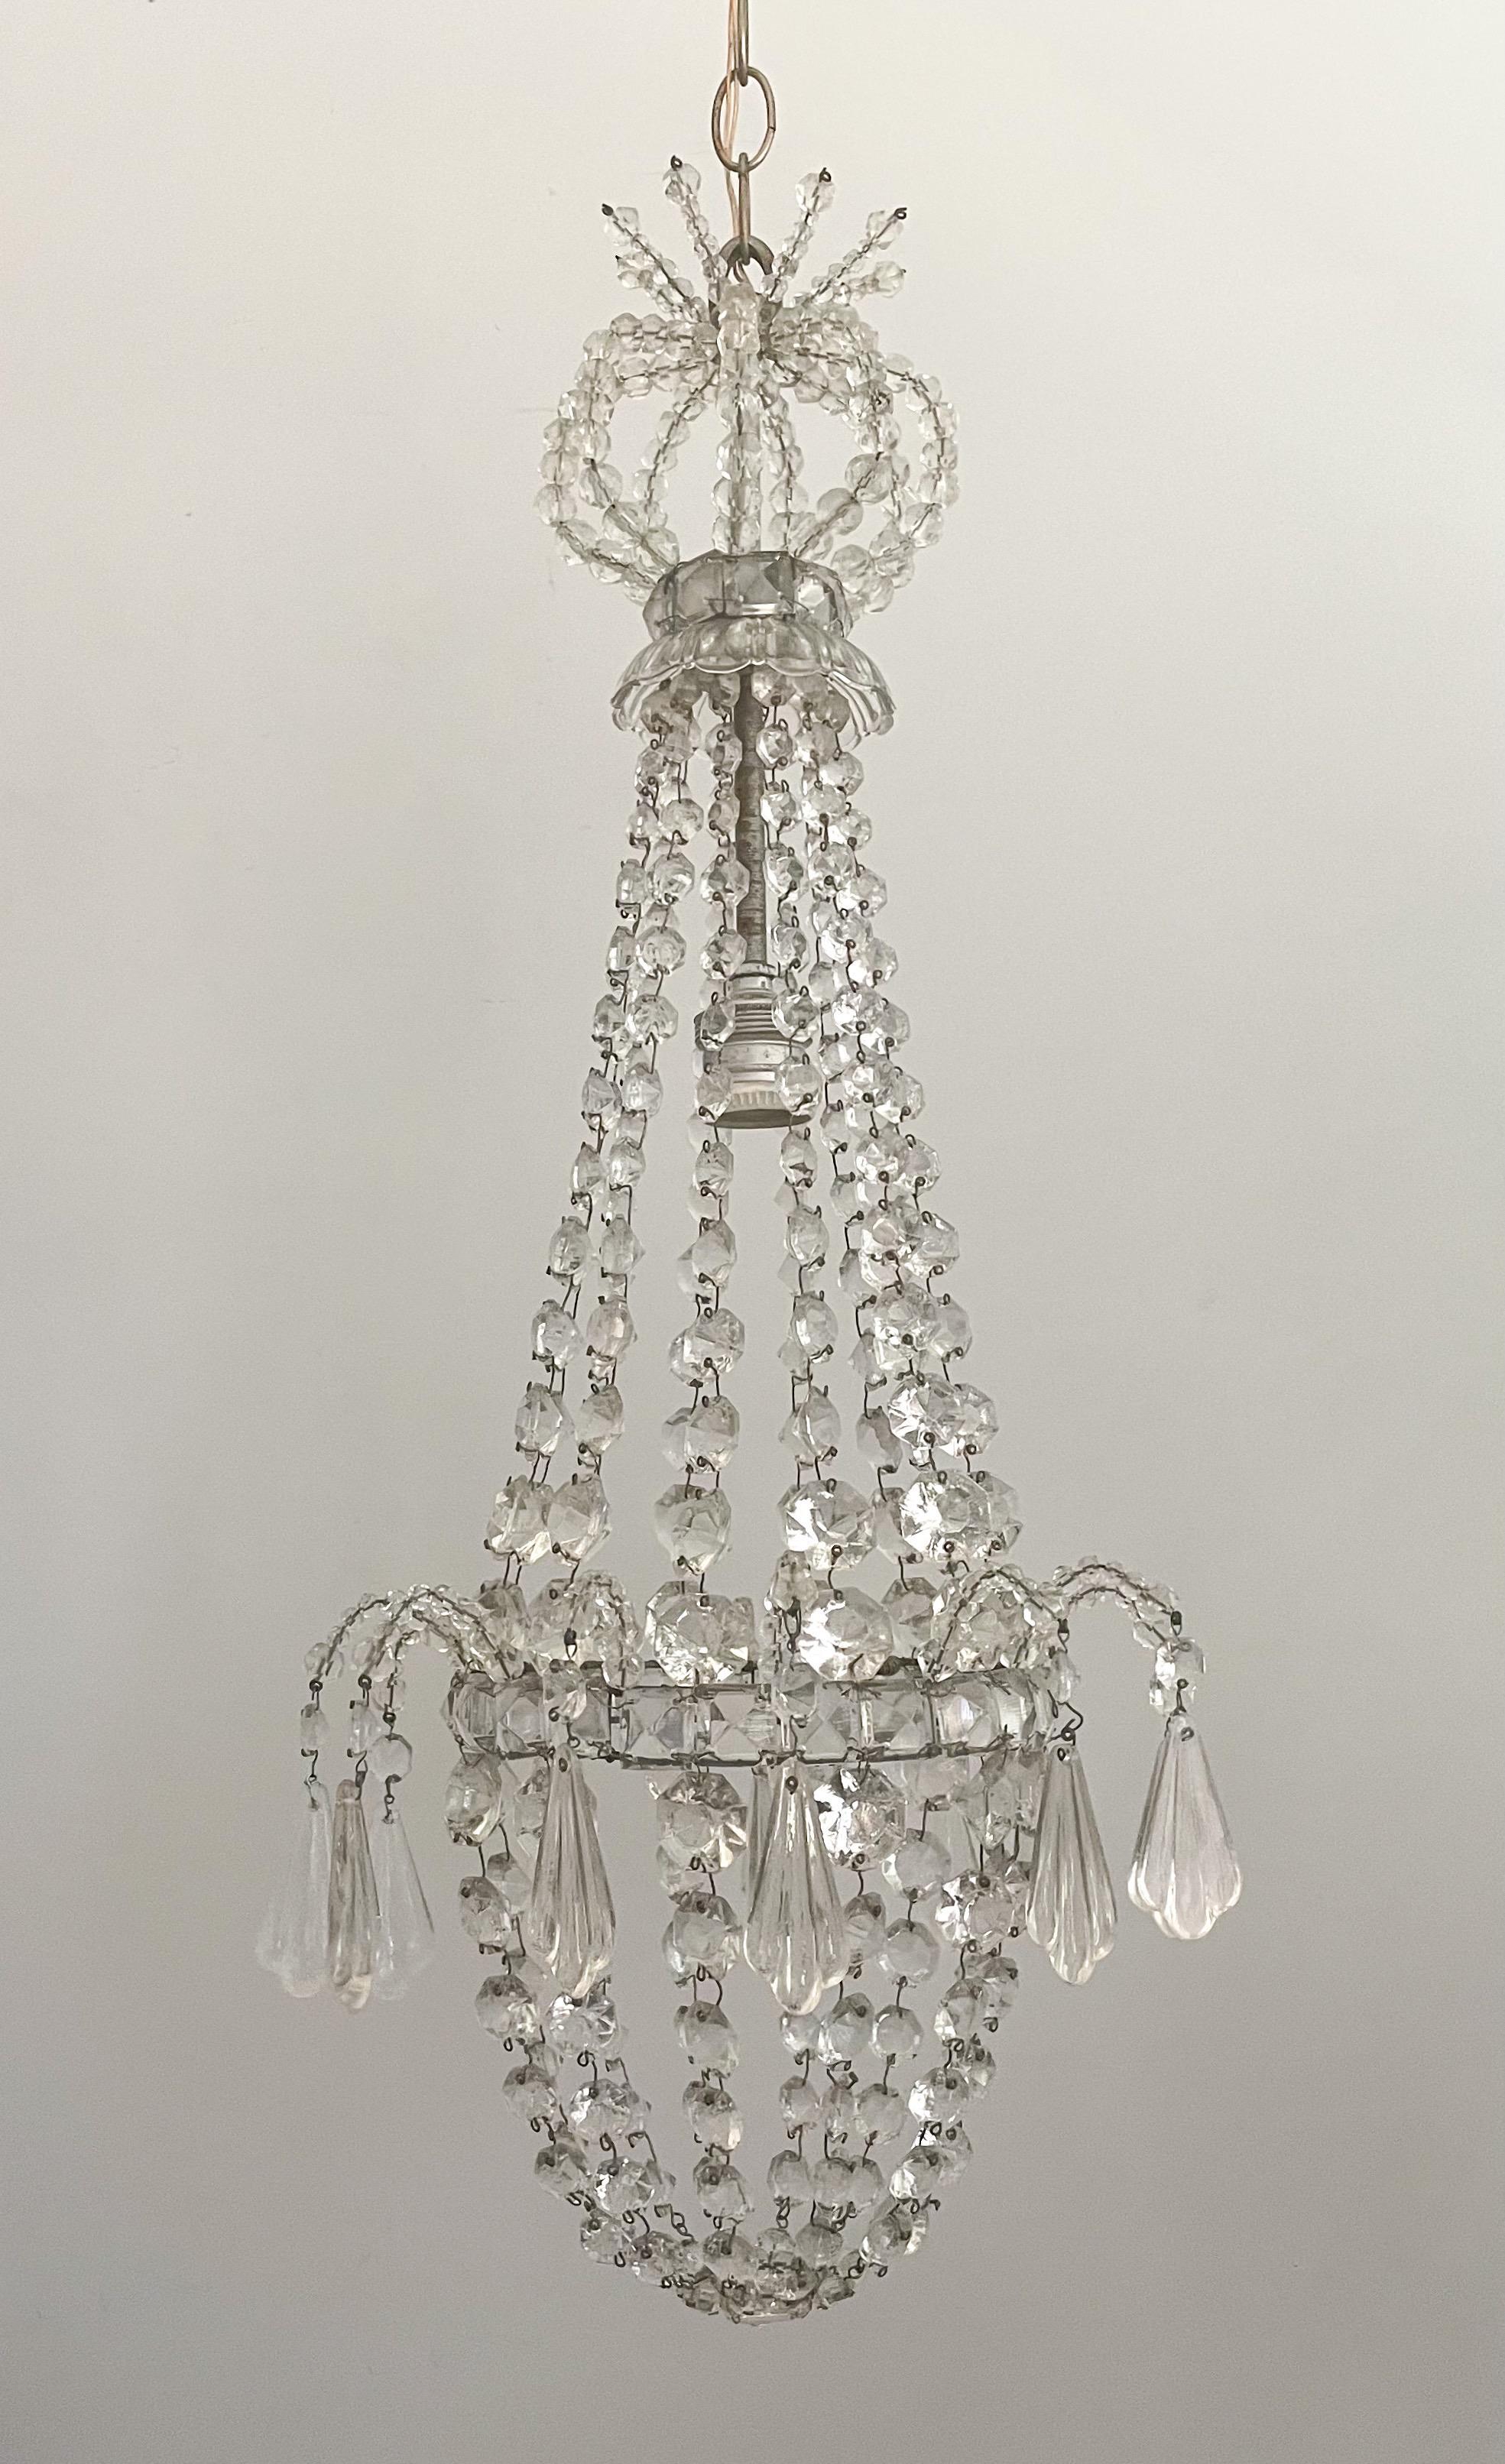 Magnifique pendentif lustre italien des années 1940 en cristal perlé.

Ce lustre présente un cadre en fer argenté décoré de perles de cristal et de coquillages 
-des prismes en forme.

Le lustre est câblé et en état de marche, il nécessite 1